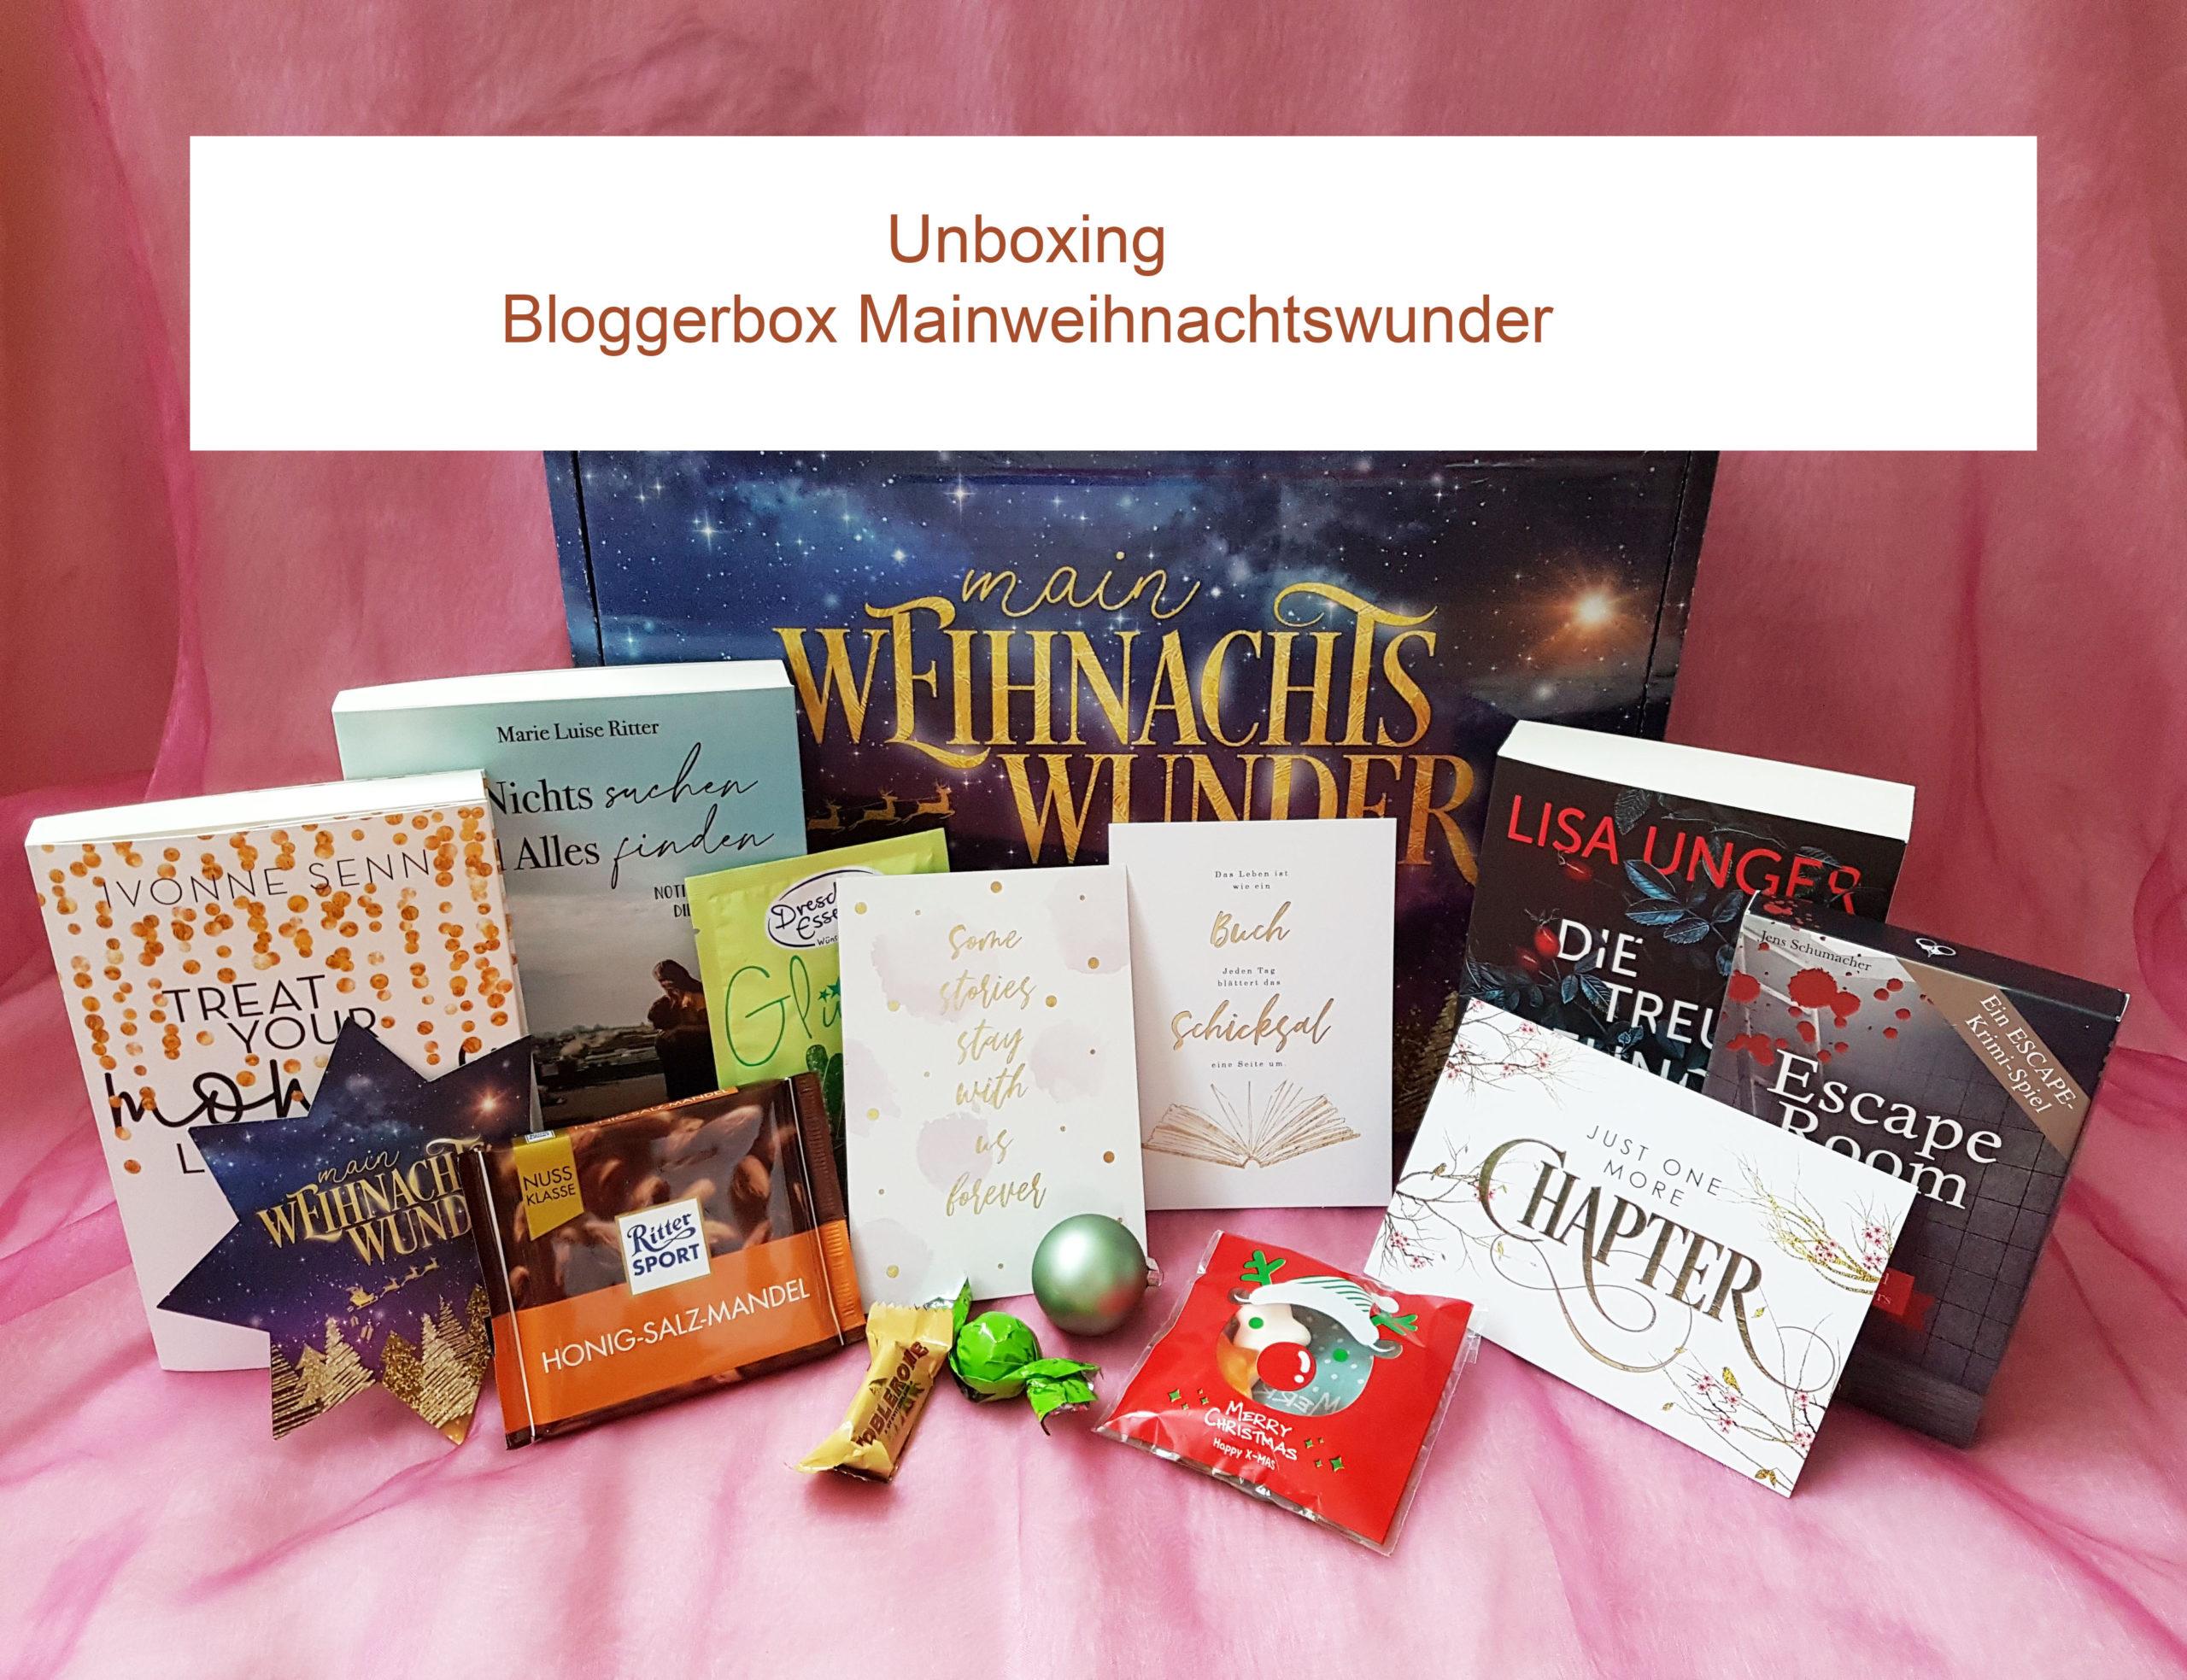 Bloggerbox der Agentur Mainwunder zu Weihnachten 2020 mit Büchern, Goodies und Süßigkeiten